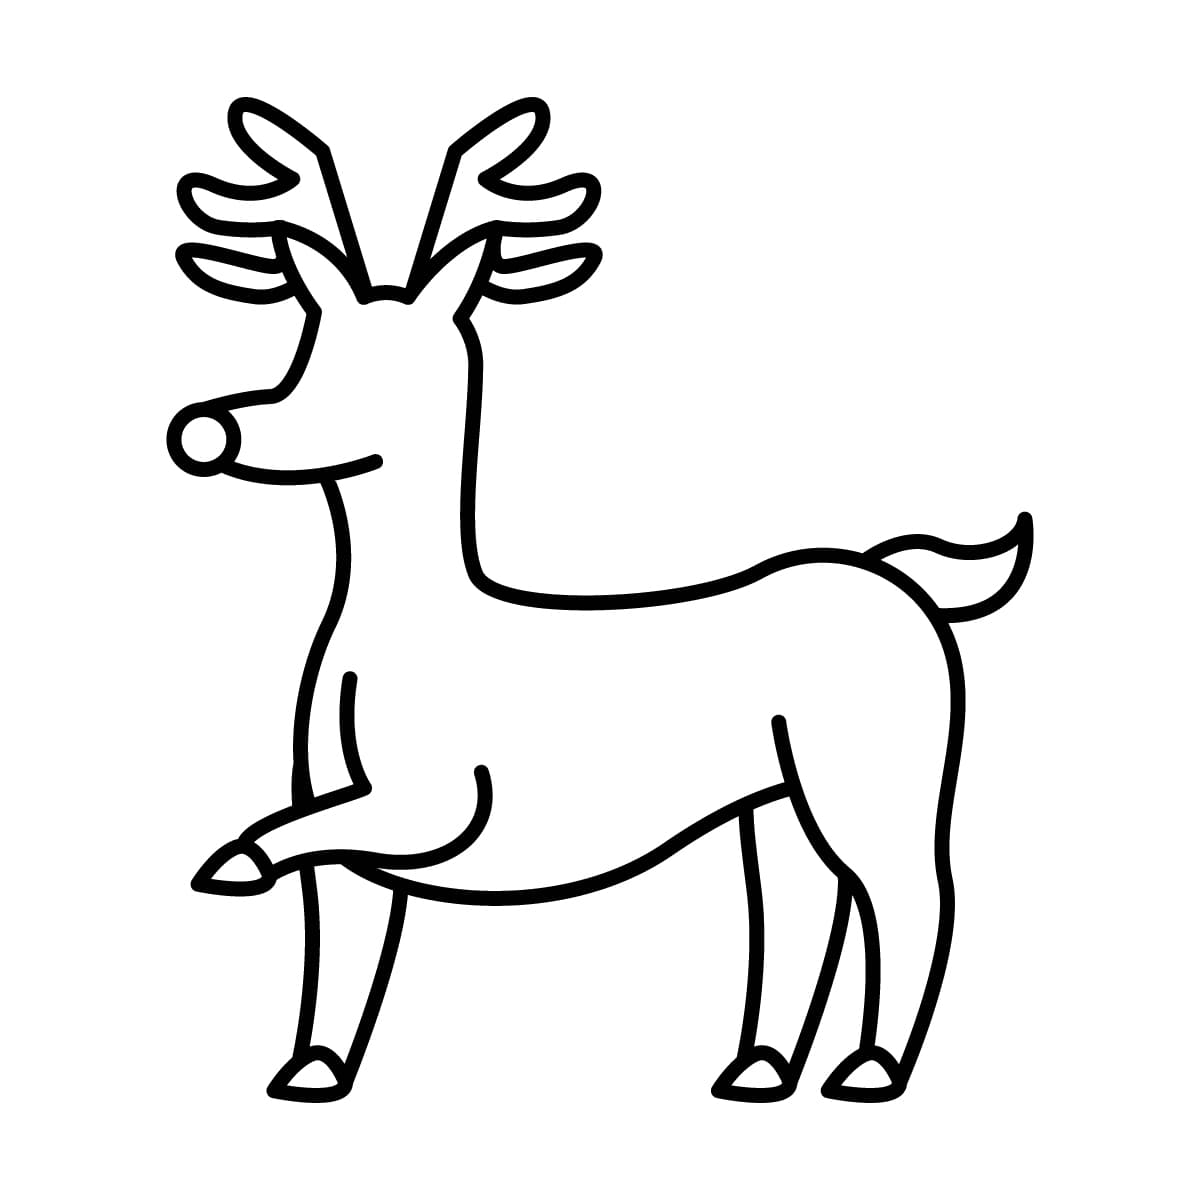 Dibujo de reno navideño para colorear e imprimir - Dibujos y colores